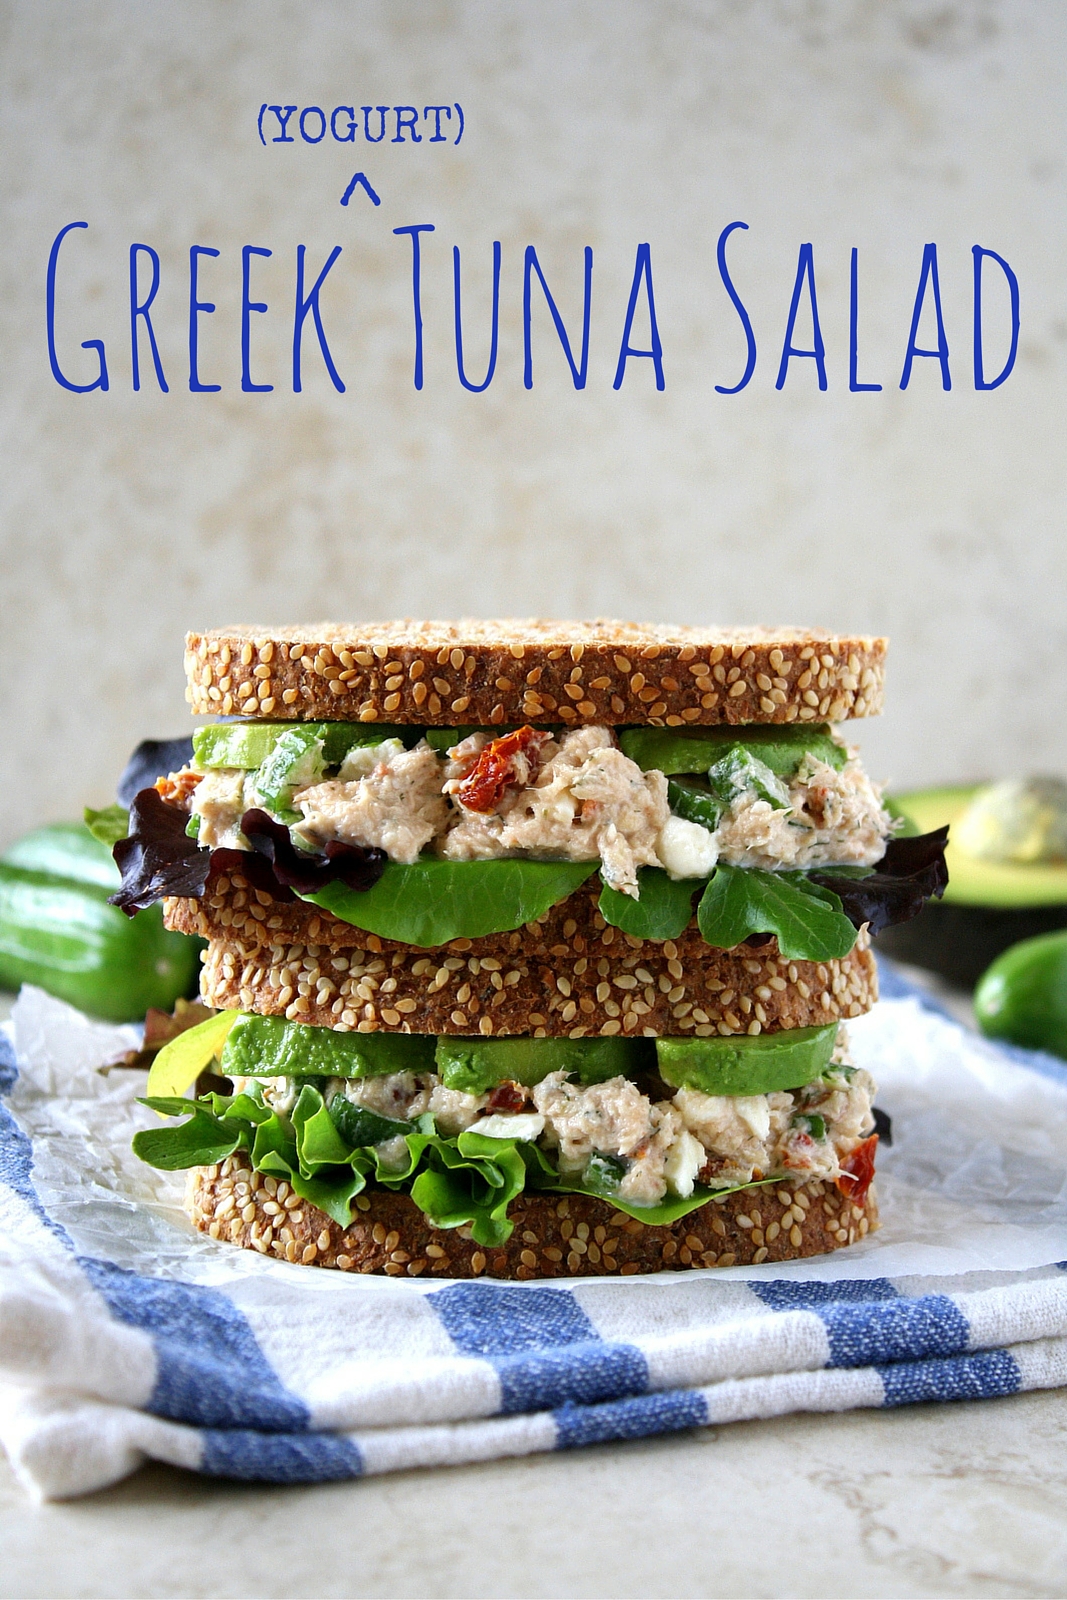 Greek tuna salad